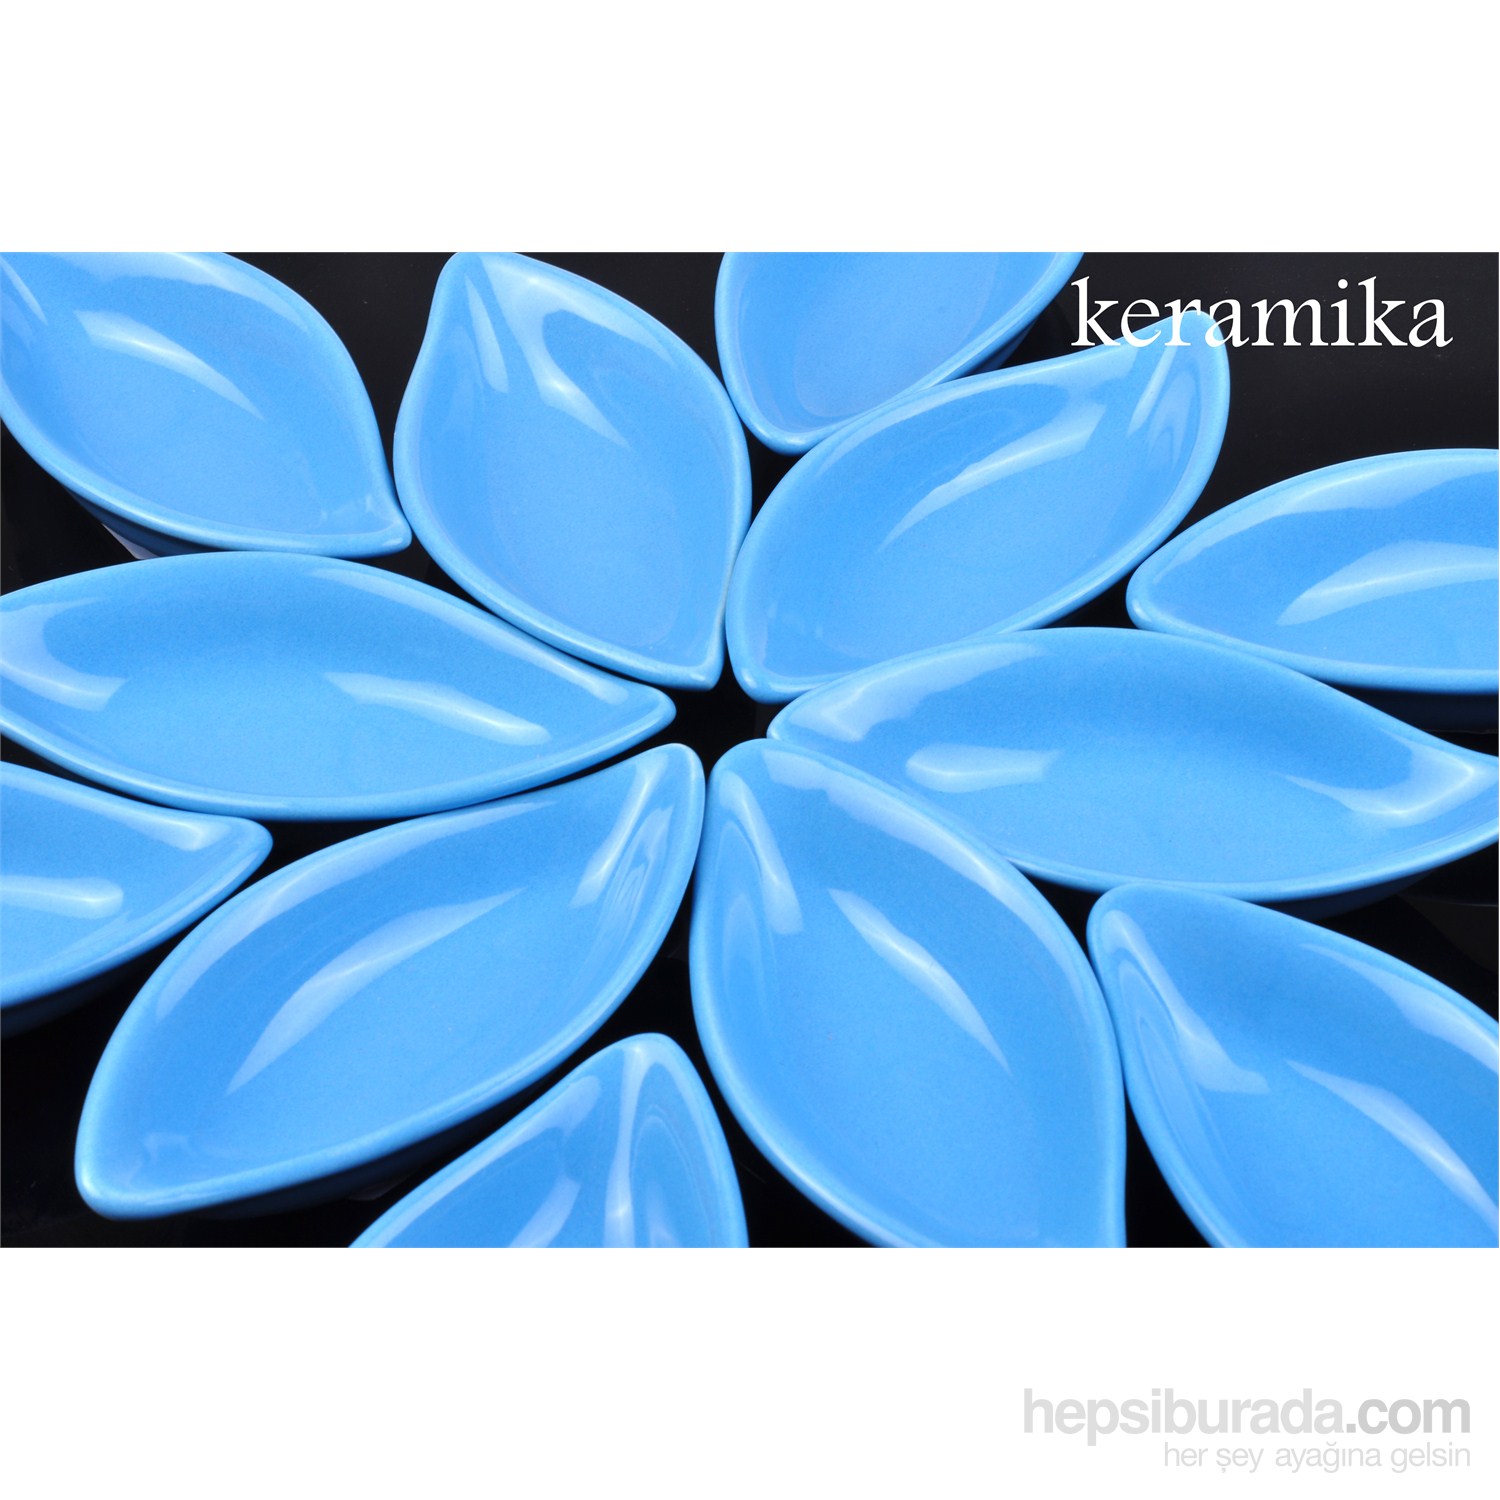 Keramika 6'lı Sosluk Yaprak 12 Cm Mavı 400